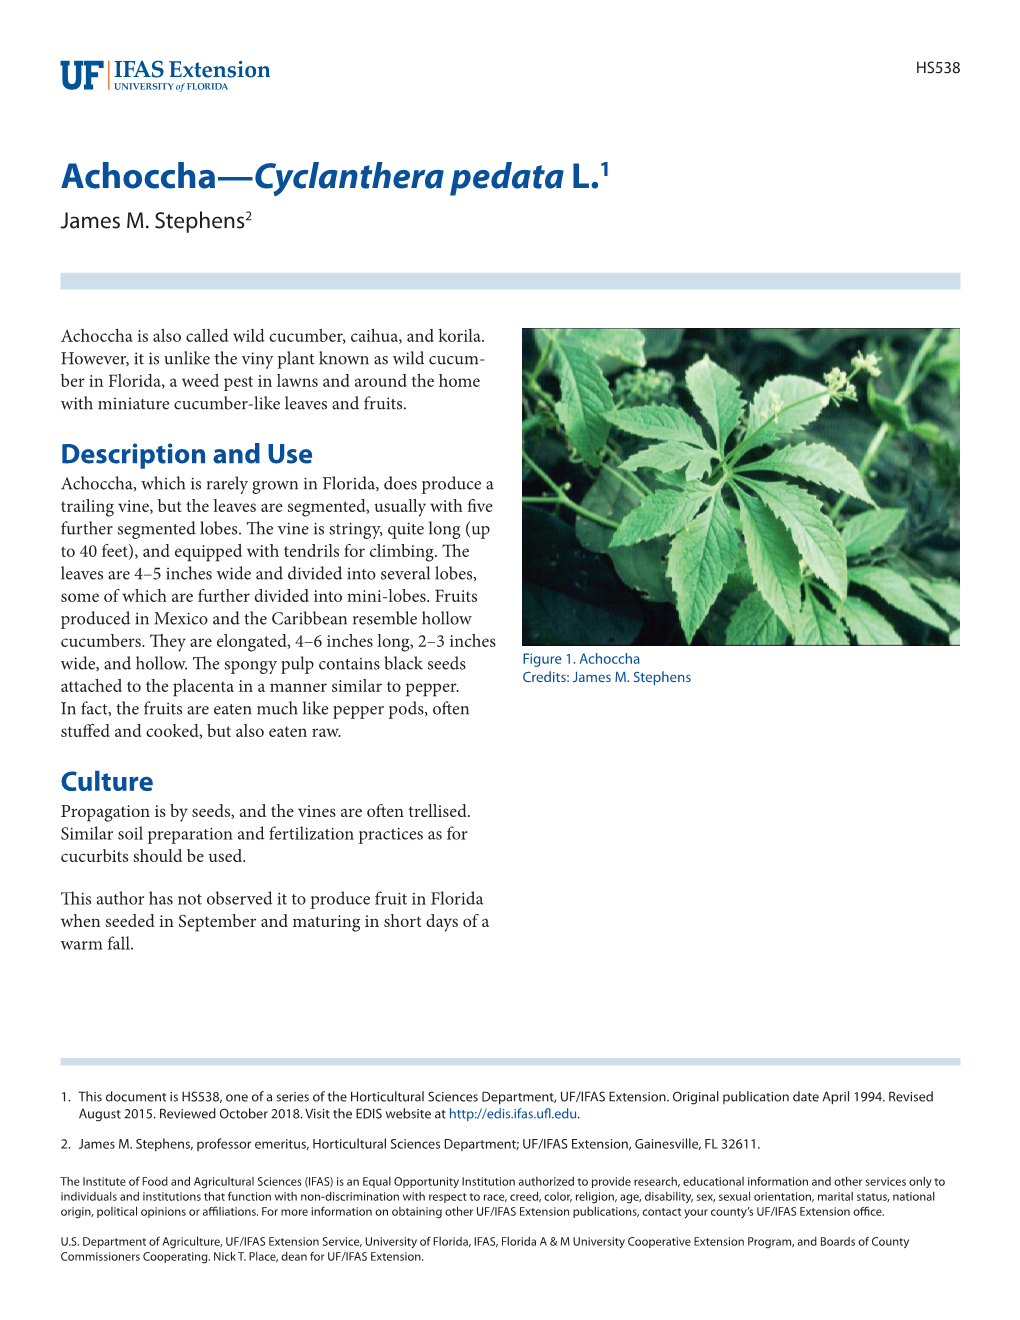 Achoccha—Cyclanthera Pedata L.1 James M